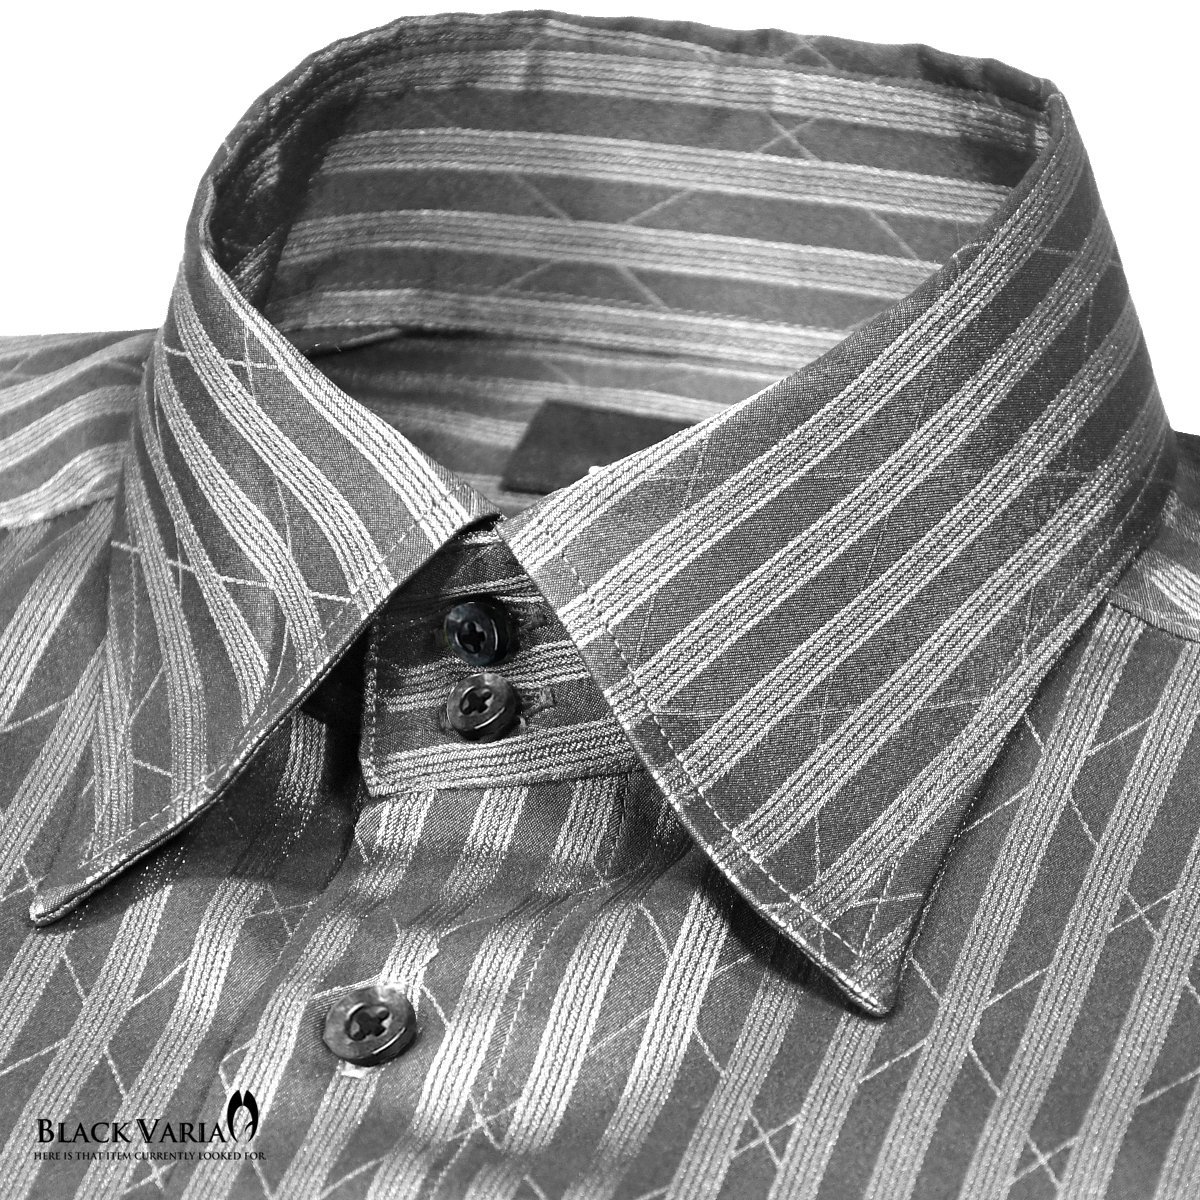 a191850-gy BLACK VARIAドゥエボットーニ パイソン蛇柄 ジャガード [レギュラーカラー]ドレスシャツ メンズ(グレー灰シルバー銀) M_画像2